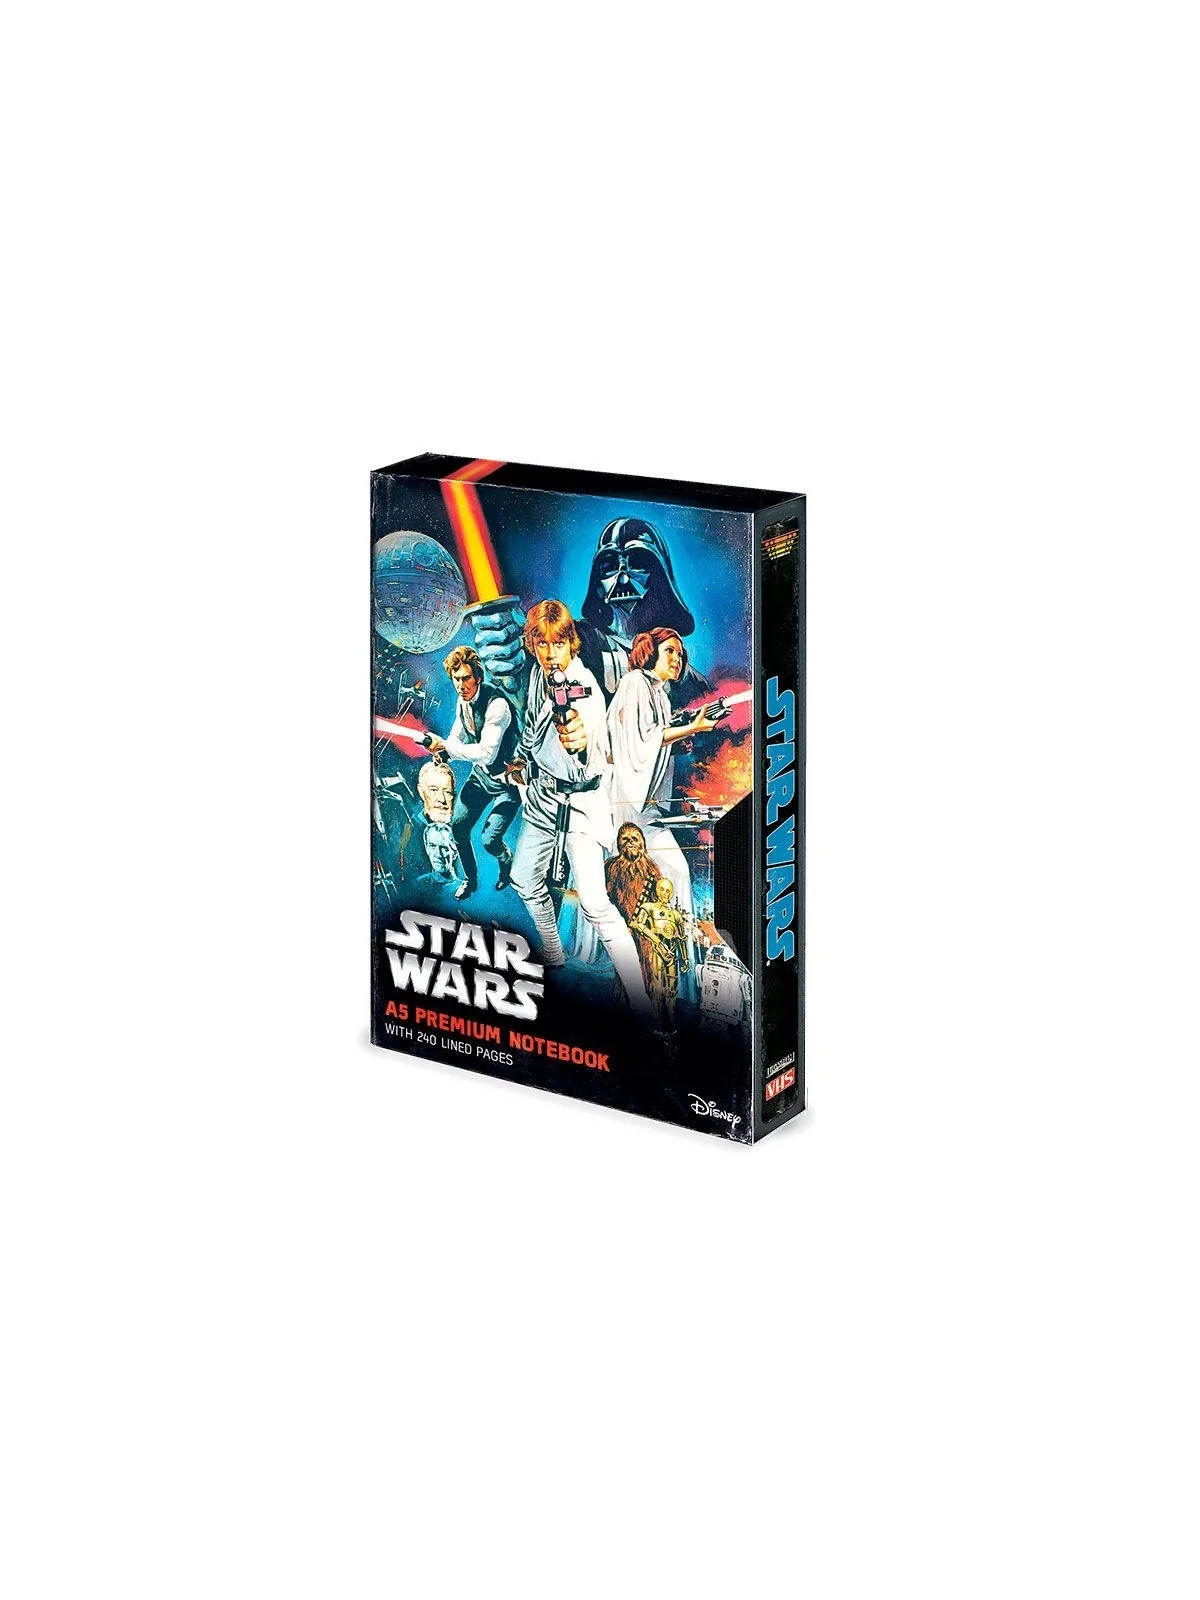 Comprar Cuaderno A5 premium VHS Star Wars barato al mejor precio 14,00